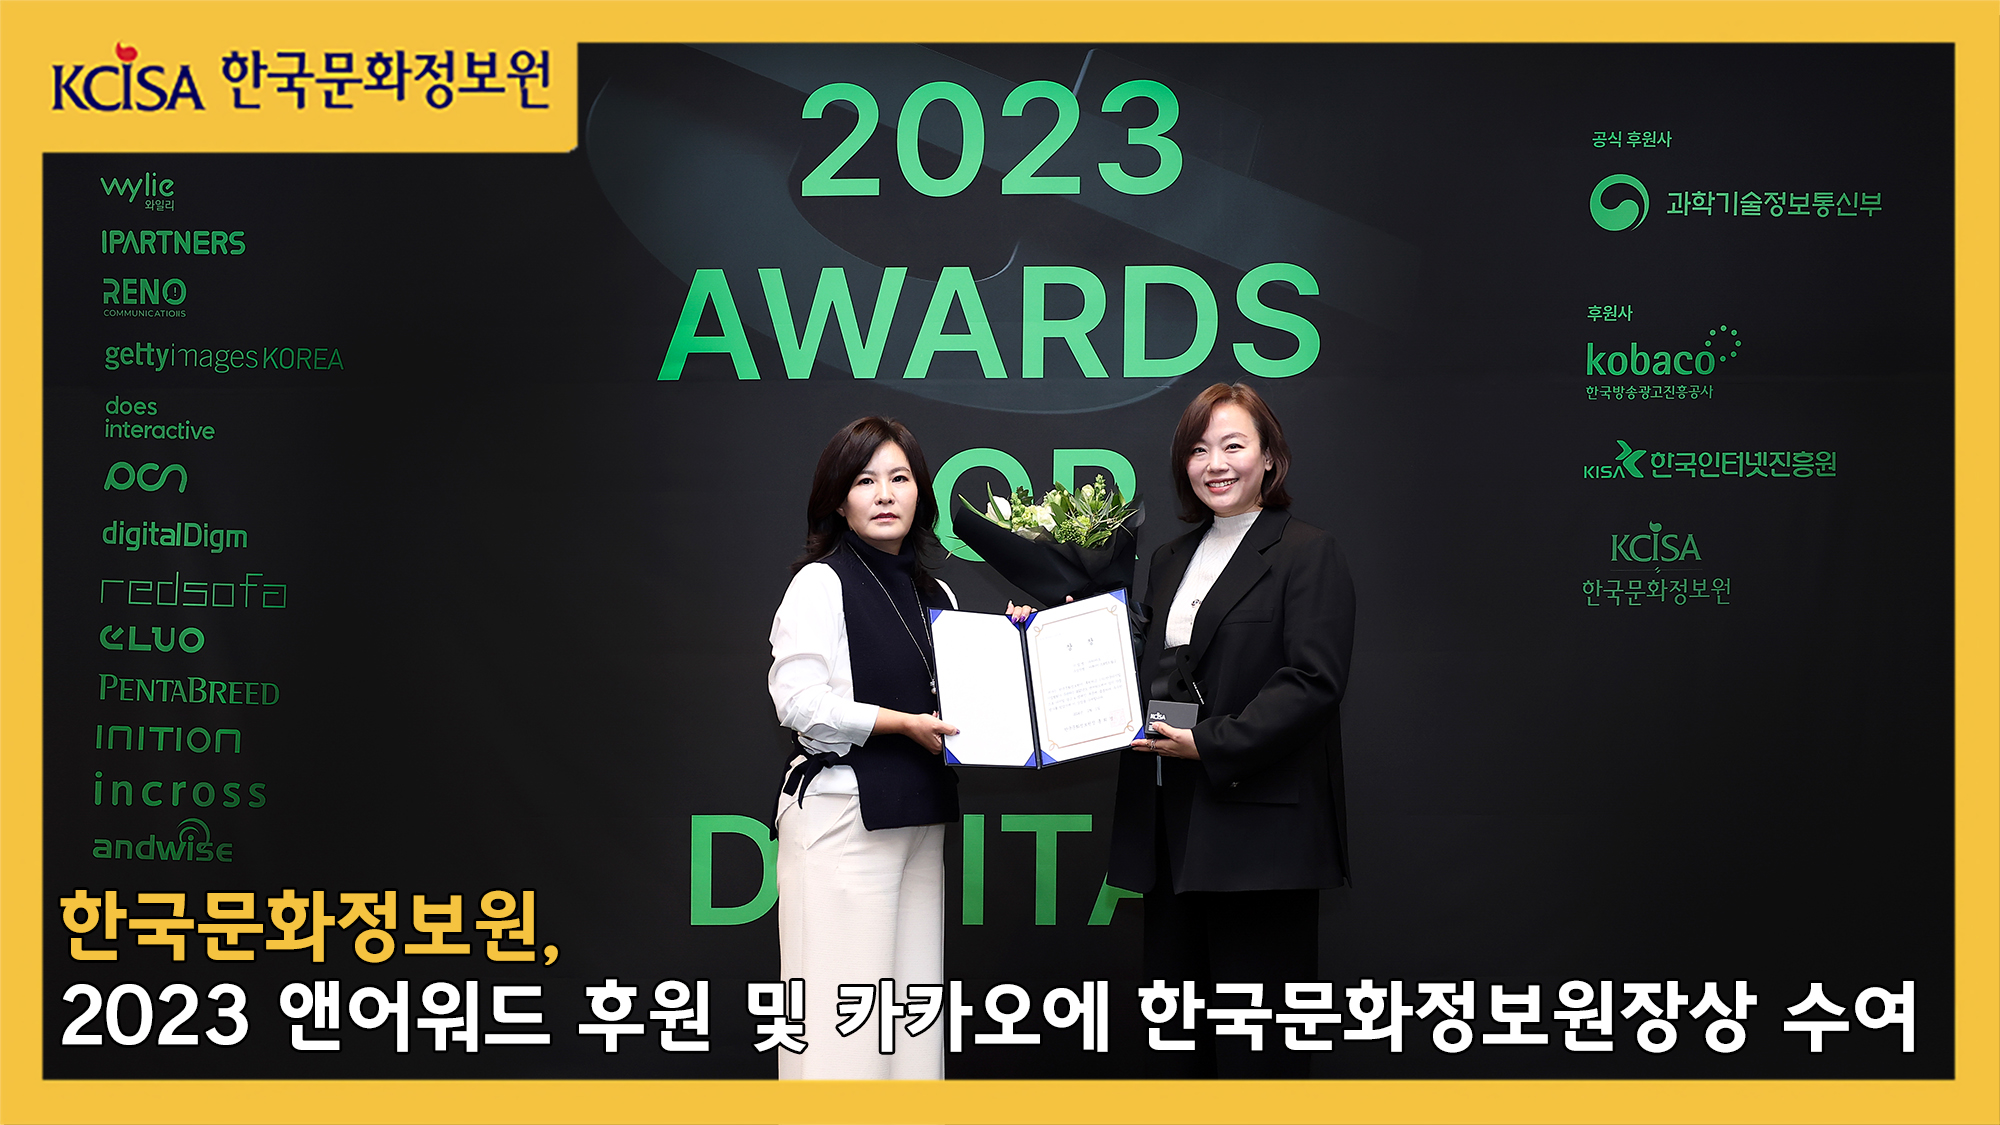 한국문화정보원, 2023 앤어워드 후원 및 카카오에 한국문화정보원장상 수여